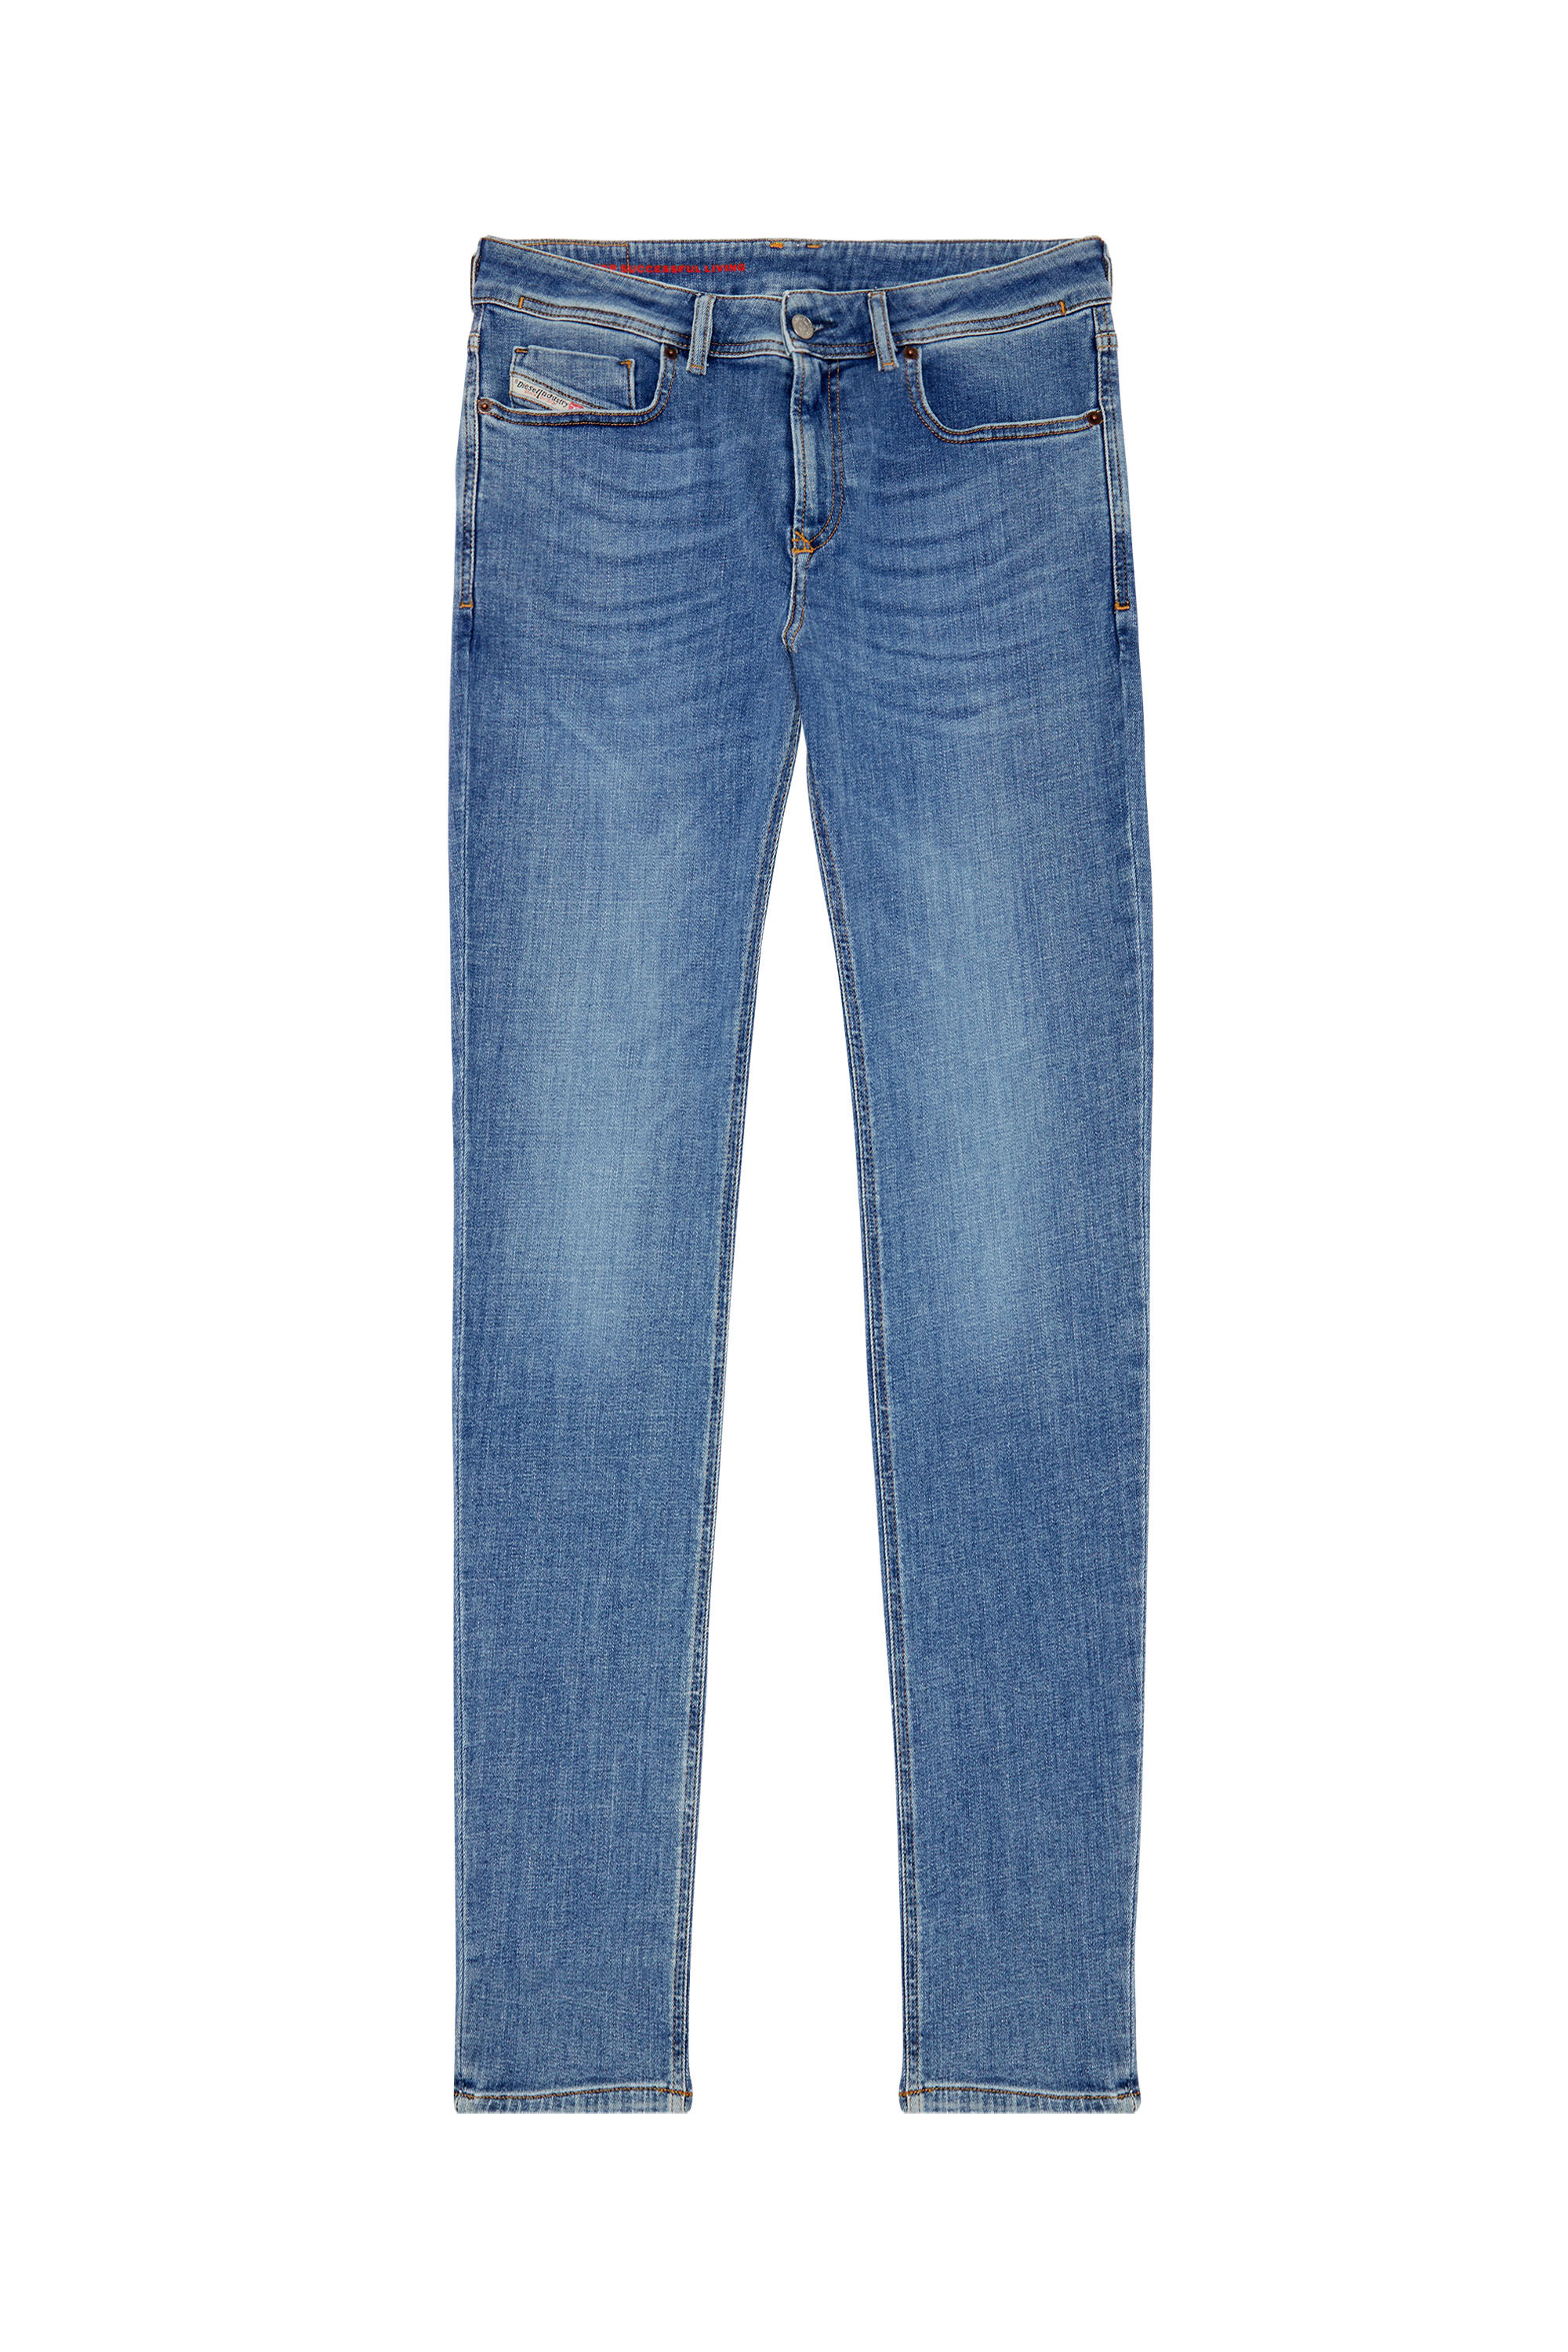 Diesel - Skinny Jeans 1979 Sleenker 09C01, Medium blue - Image 2